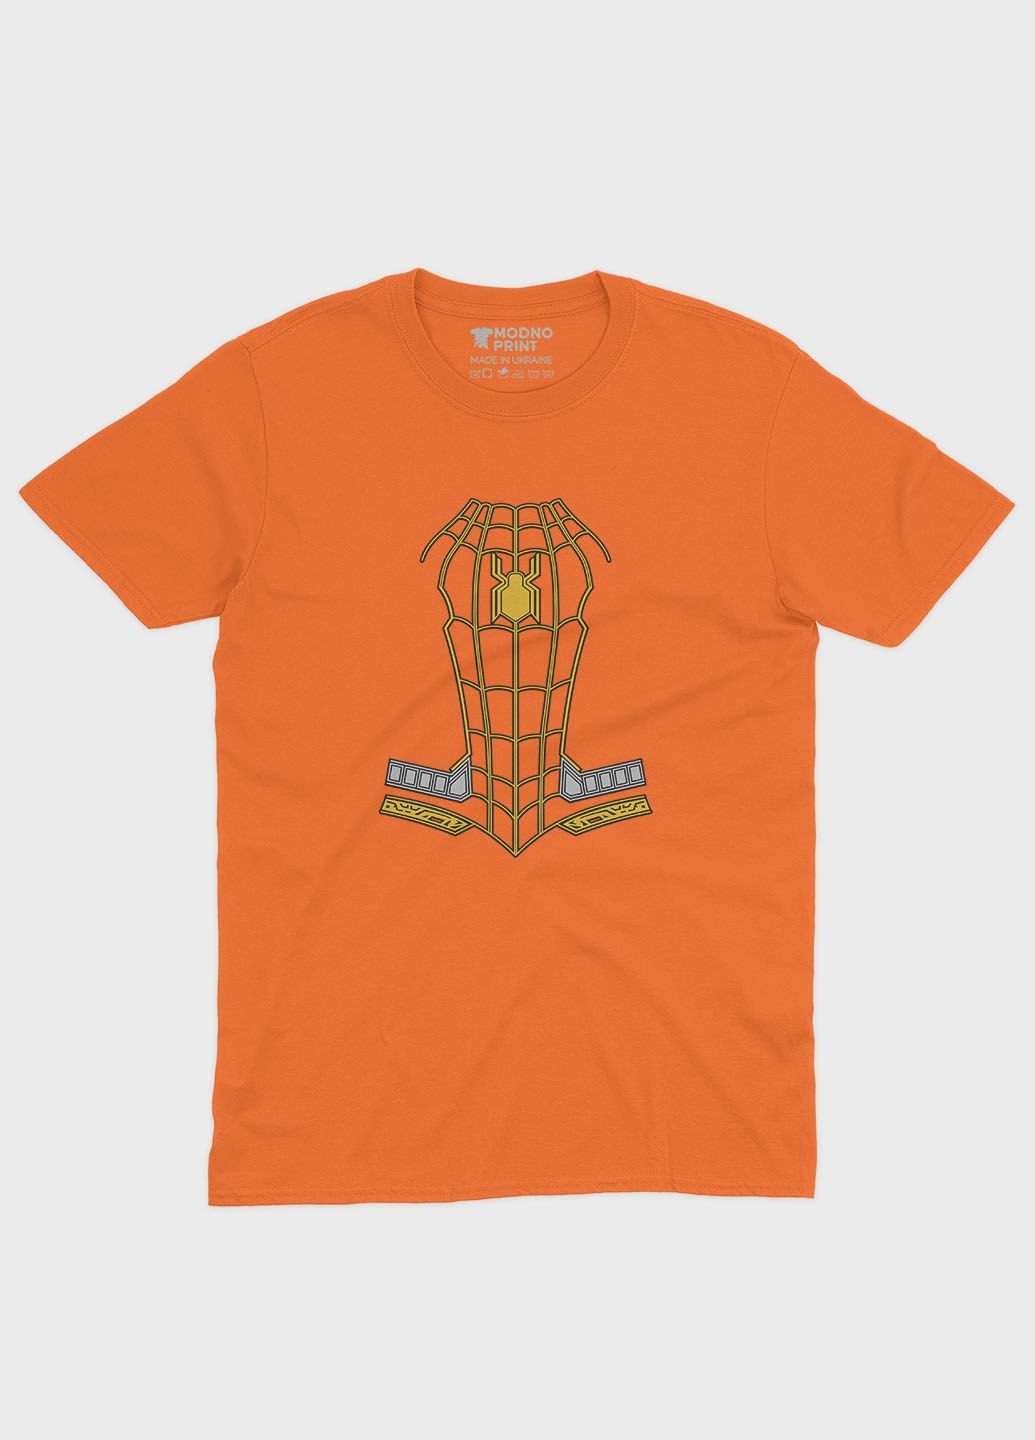 Помаранчева демісезонна футболка для хлопчика з принтом супергероя - людина-павук (ts001-1-ora-006-014-083-b) Modno